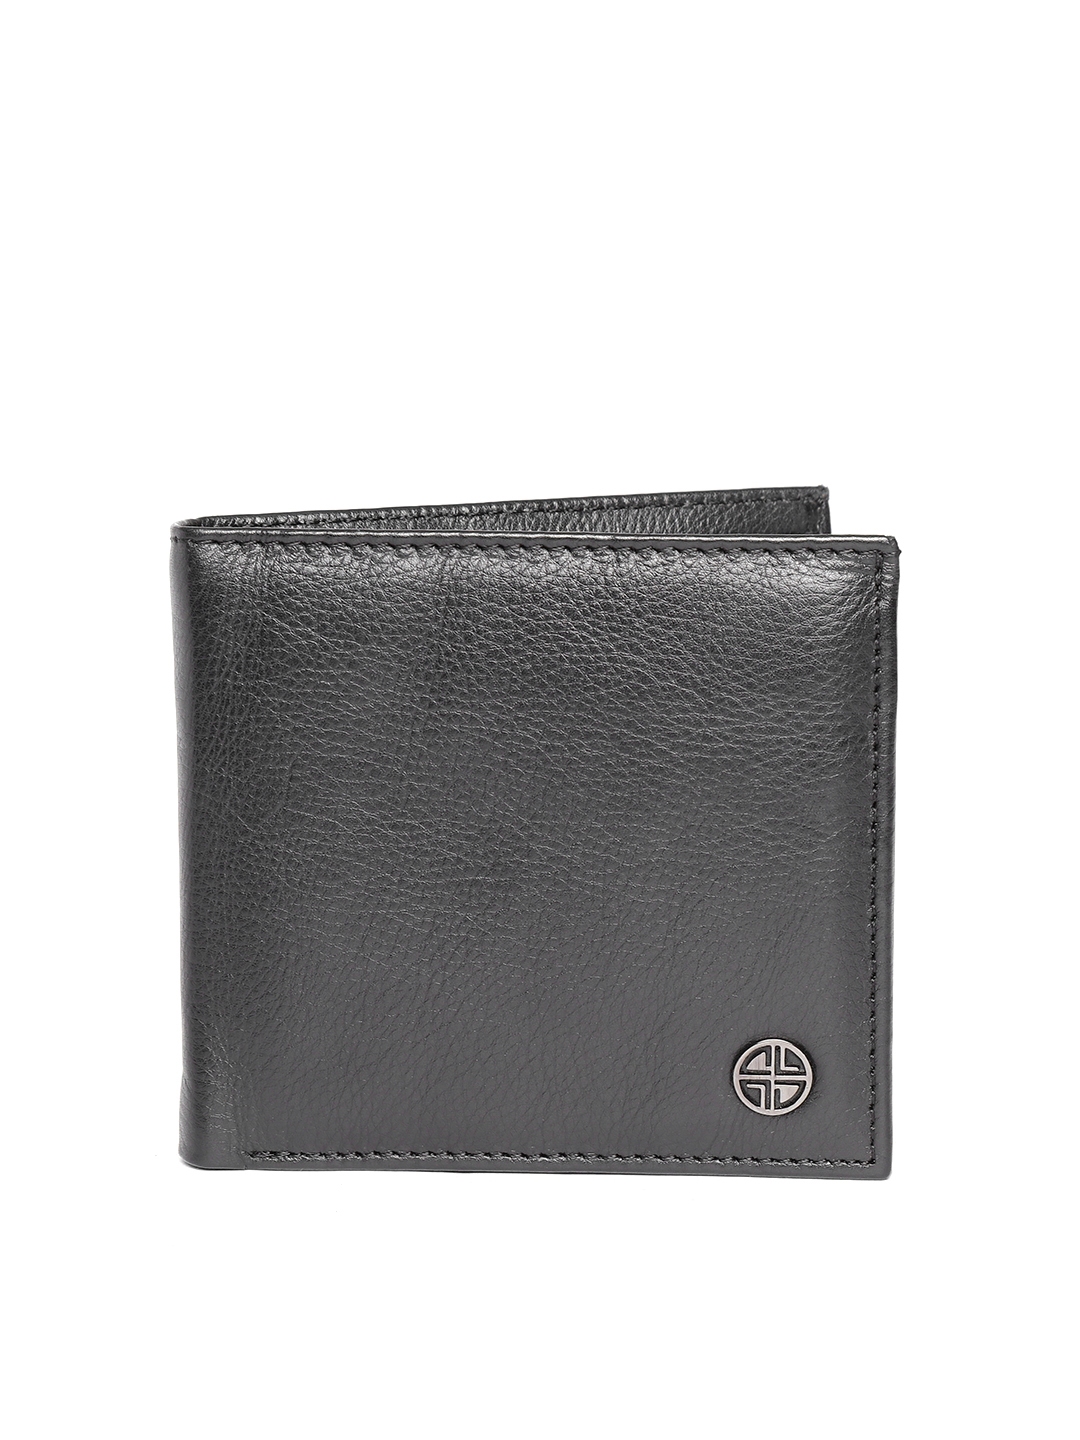 Buy Carlton London Men Black Solid Leather Two Fold Wallet - Wallets